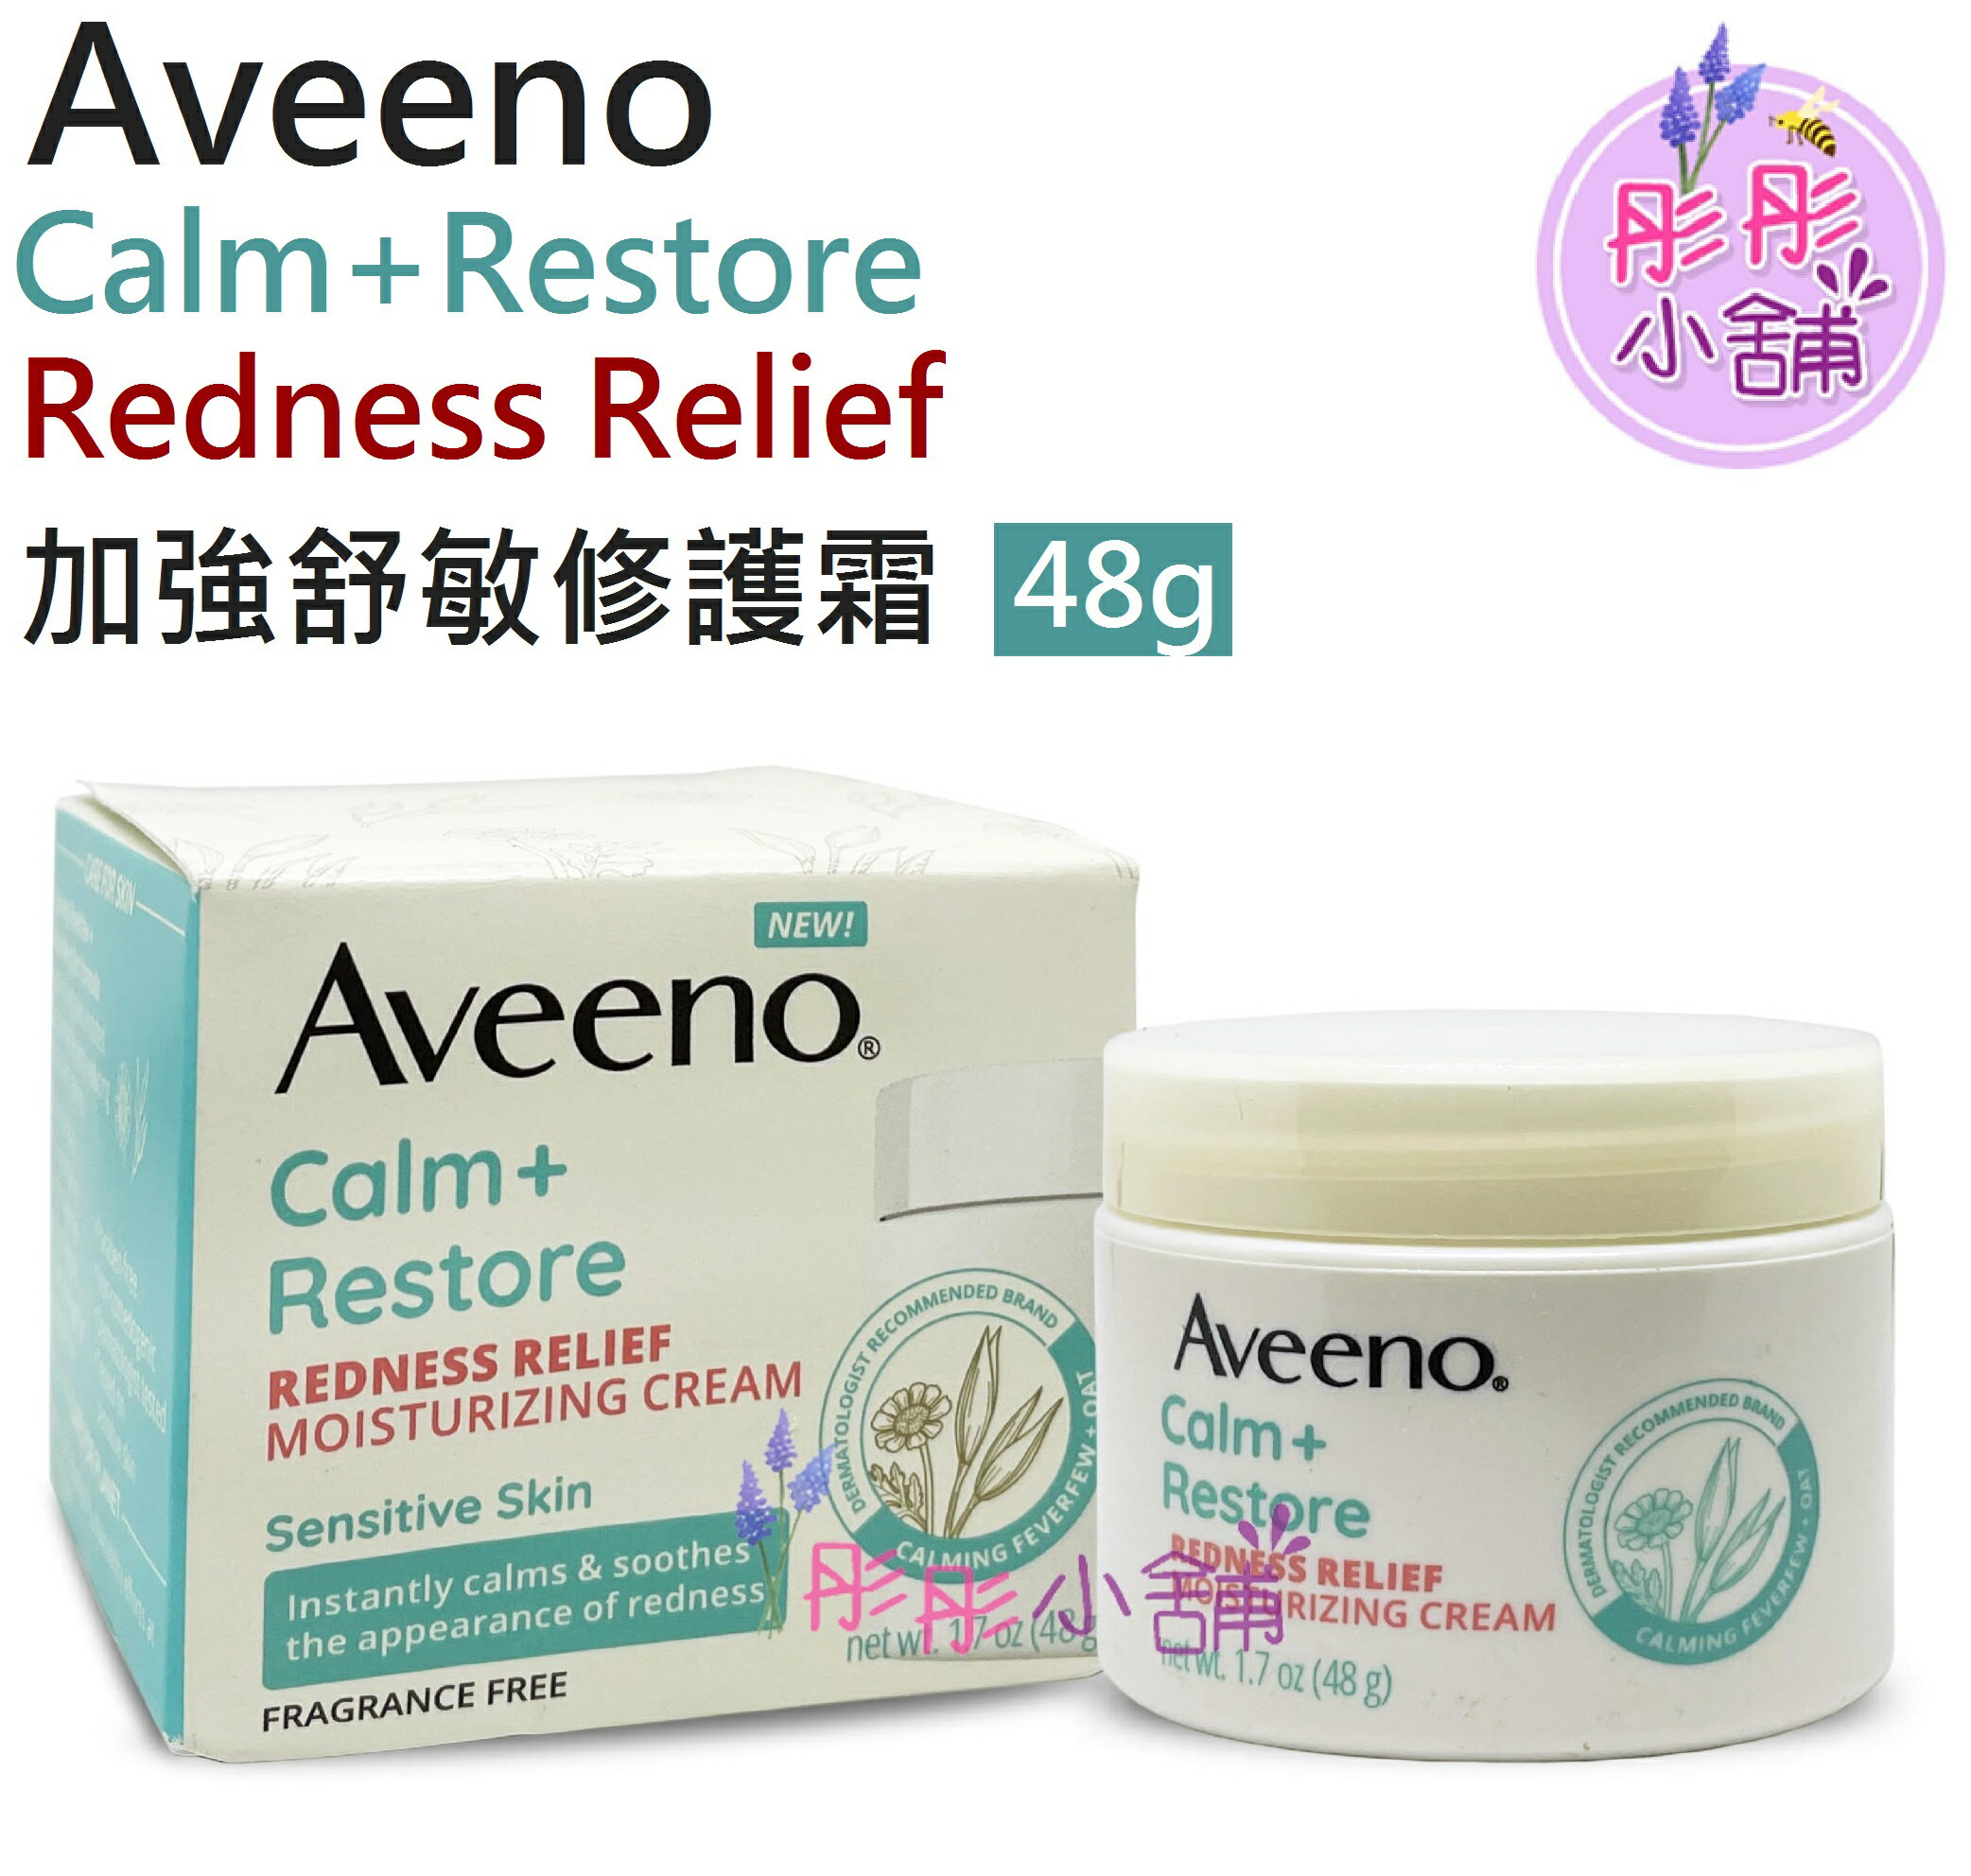 【彤彤小舖】Aveeno Calm + Restore Redness 加強舒敏修護霜 48g 無香 加護舒緩泛紅